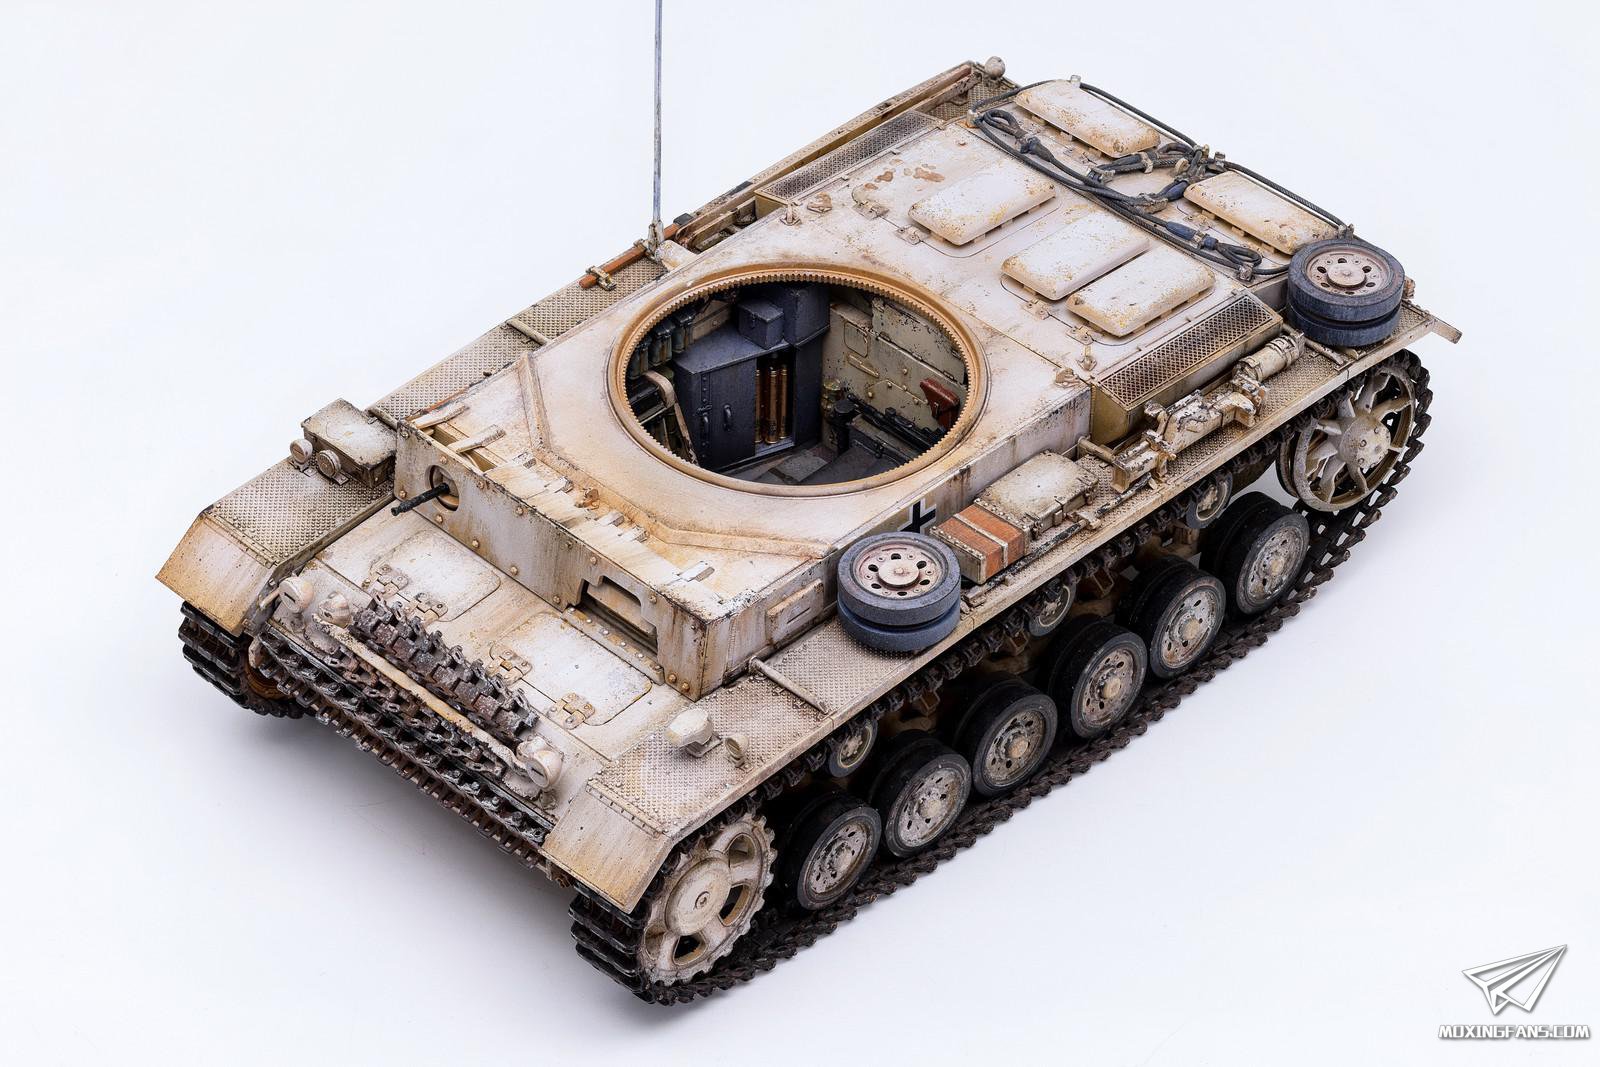 1/35 现代美国 M1A1/A2 艾布拉姆斯主战坦克(全内构) [RM 5007] - 269.00元 : Hobbyhouses模想玩具店